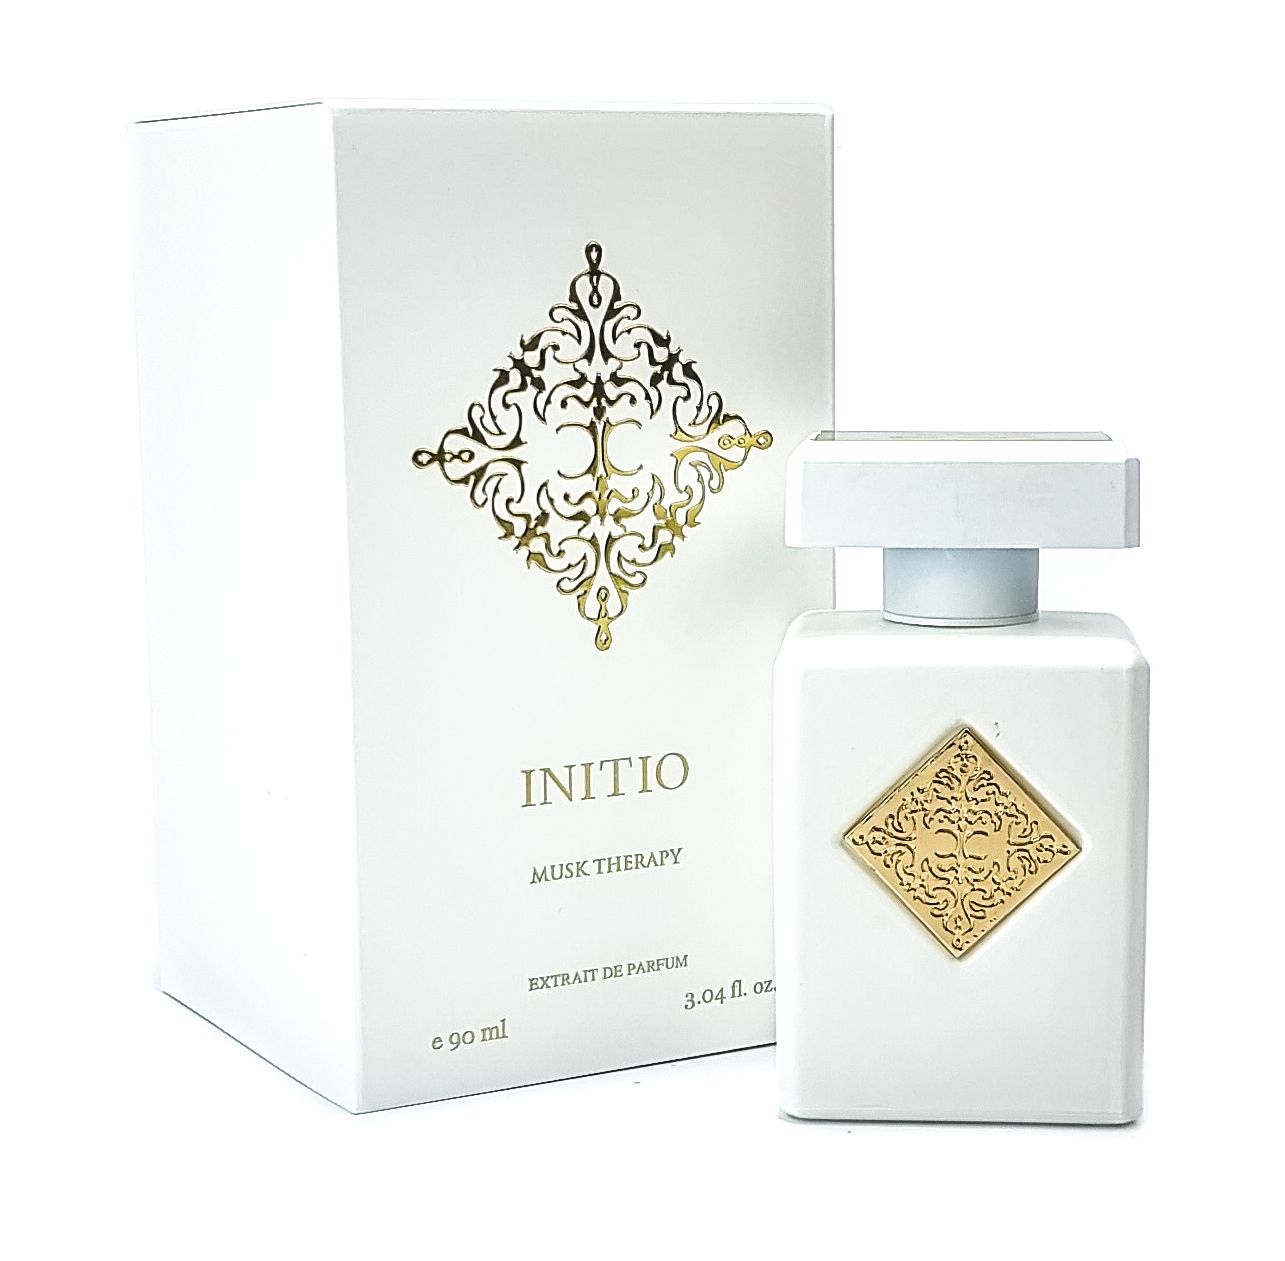 Инитио парфюм отзывы